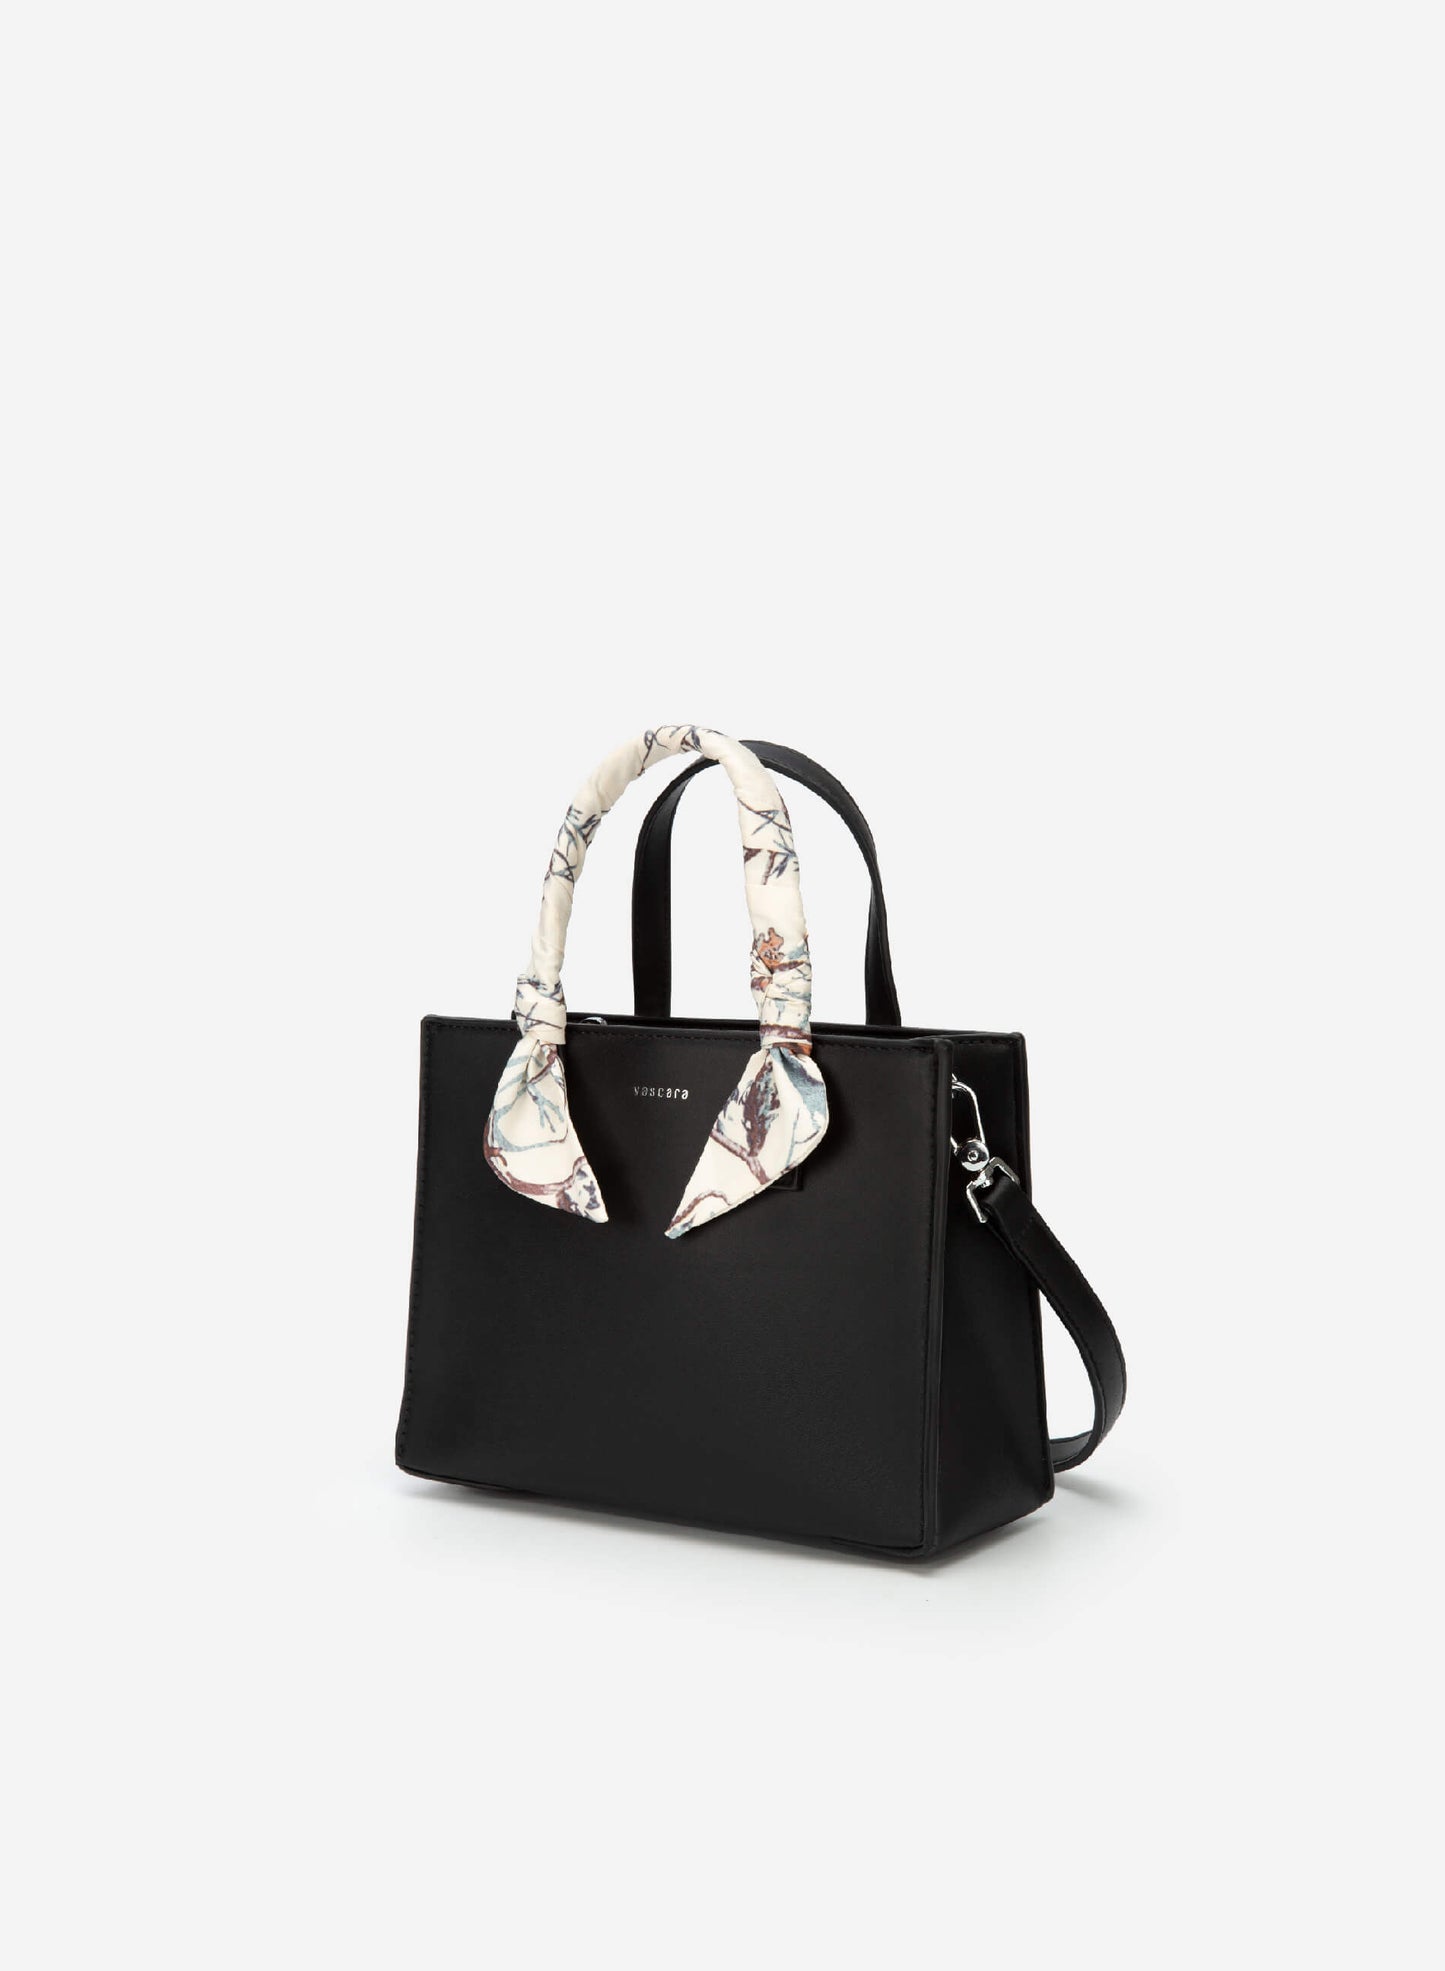 Floral Cloth Décor Handbag - Black